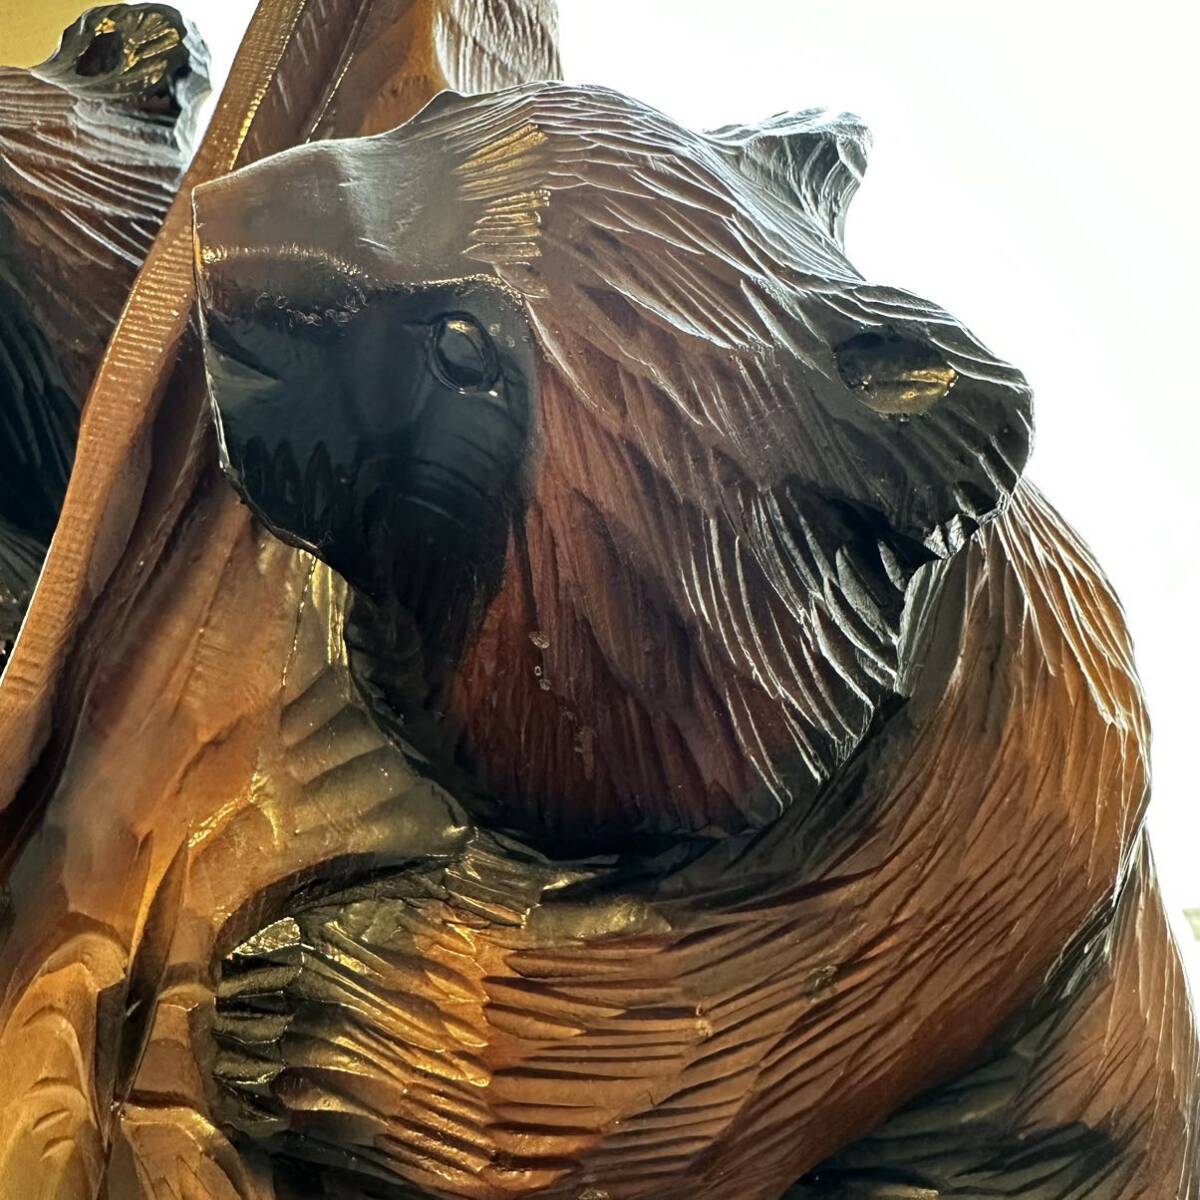 熊 木彫り 最大高さ73cm 1本木 熊3匹 親子 木彫 民芸品 伝統工芸品 インテリア アート置物 _画像3